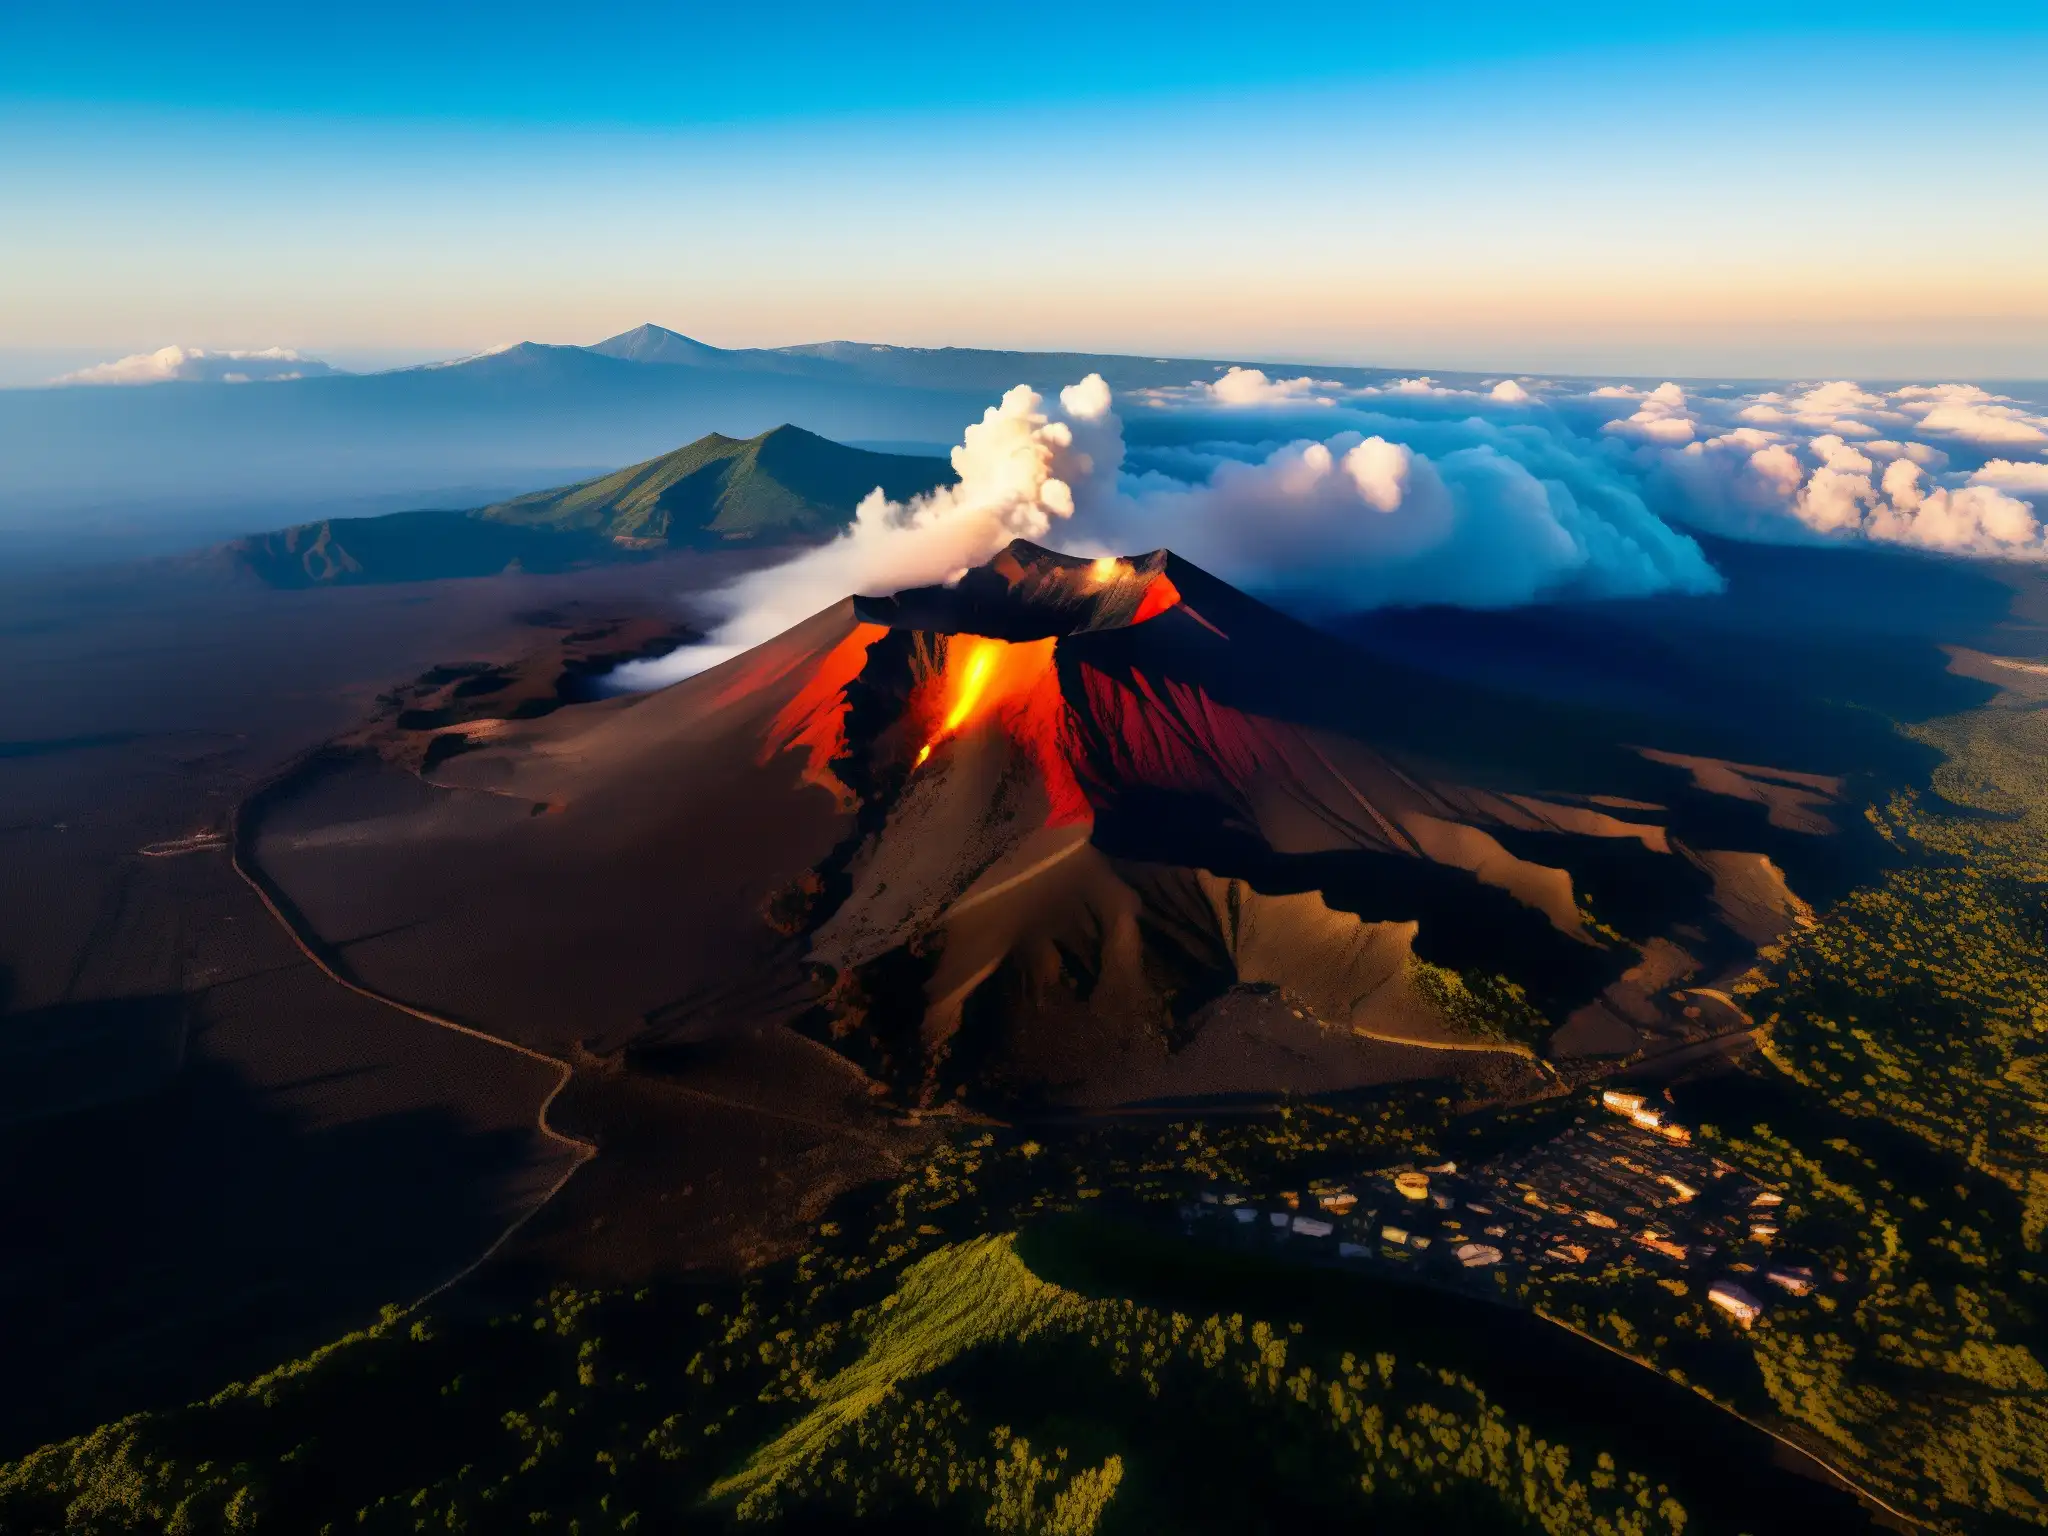 El imponente Monte Etna con humeantes nubes de ceniza y brillos de lava, evocando mitos y leyendas urbanas Monte Etna